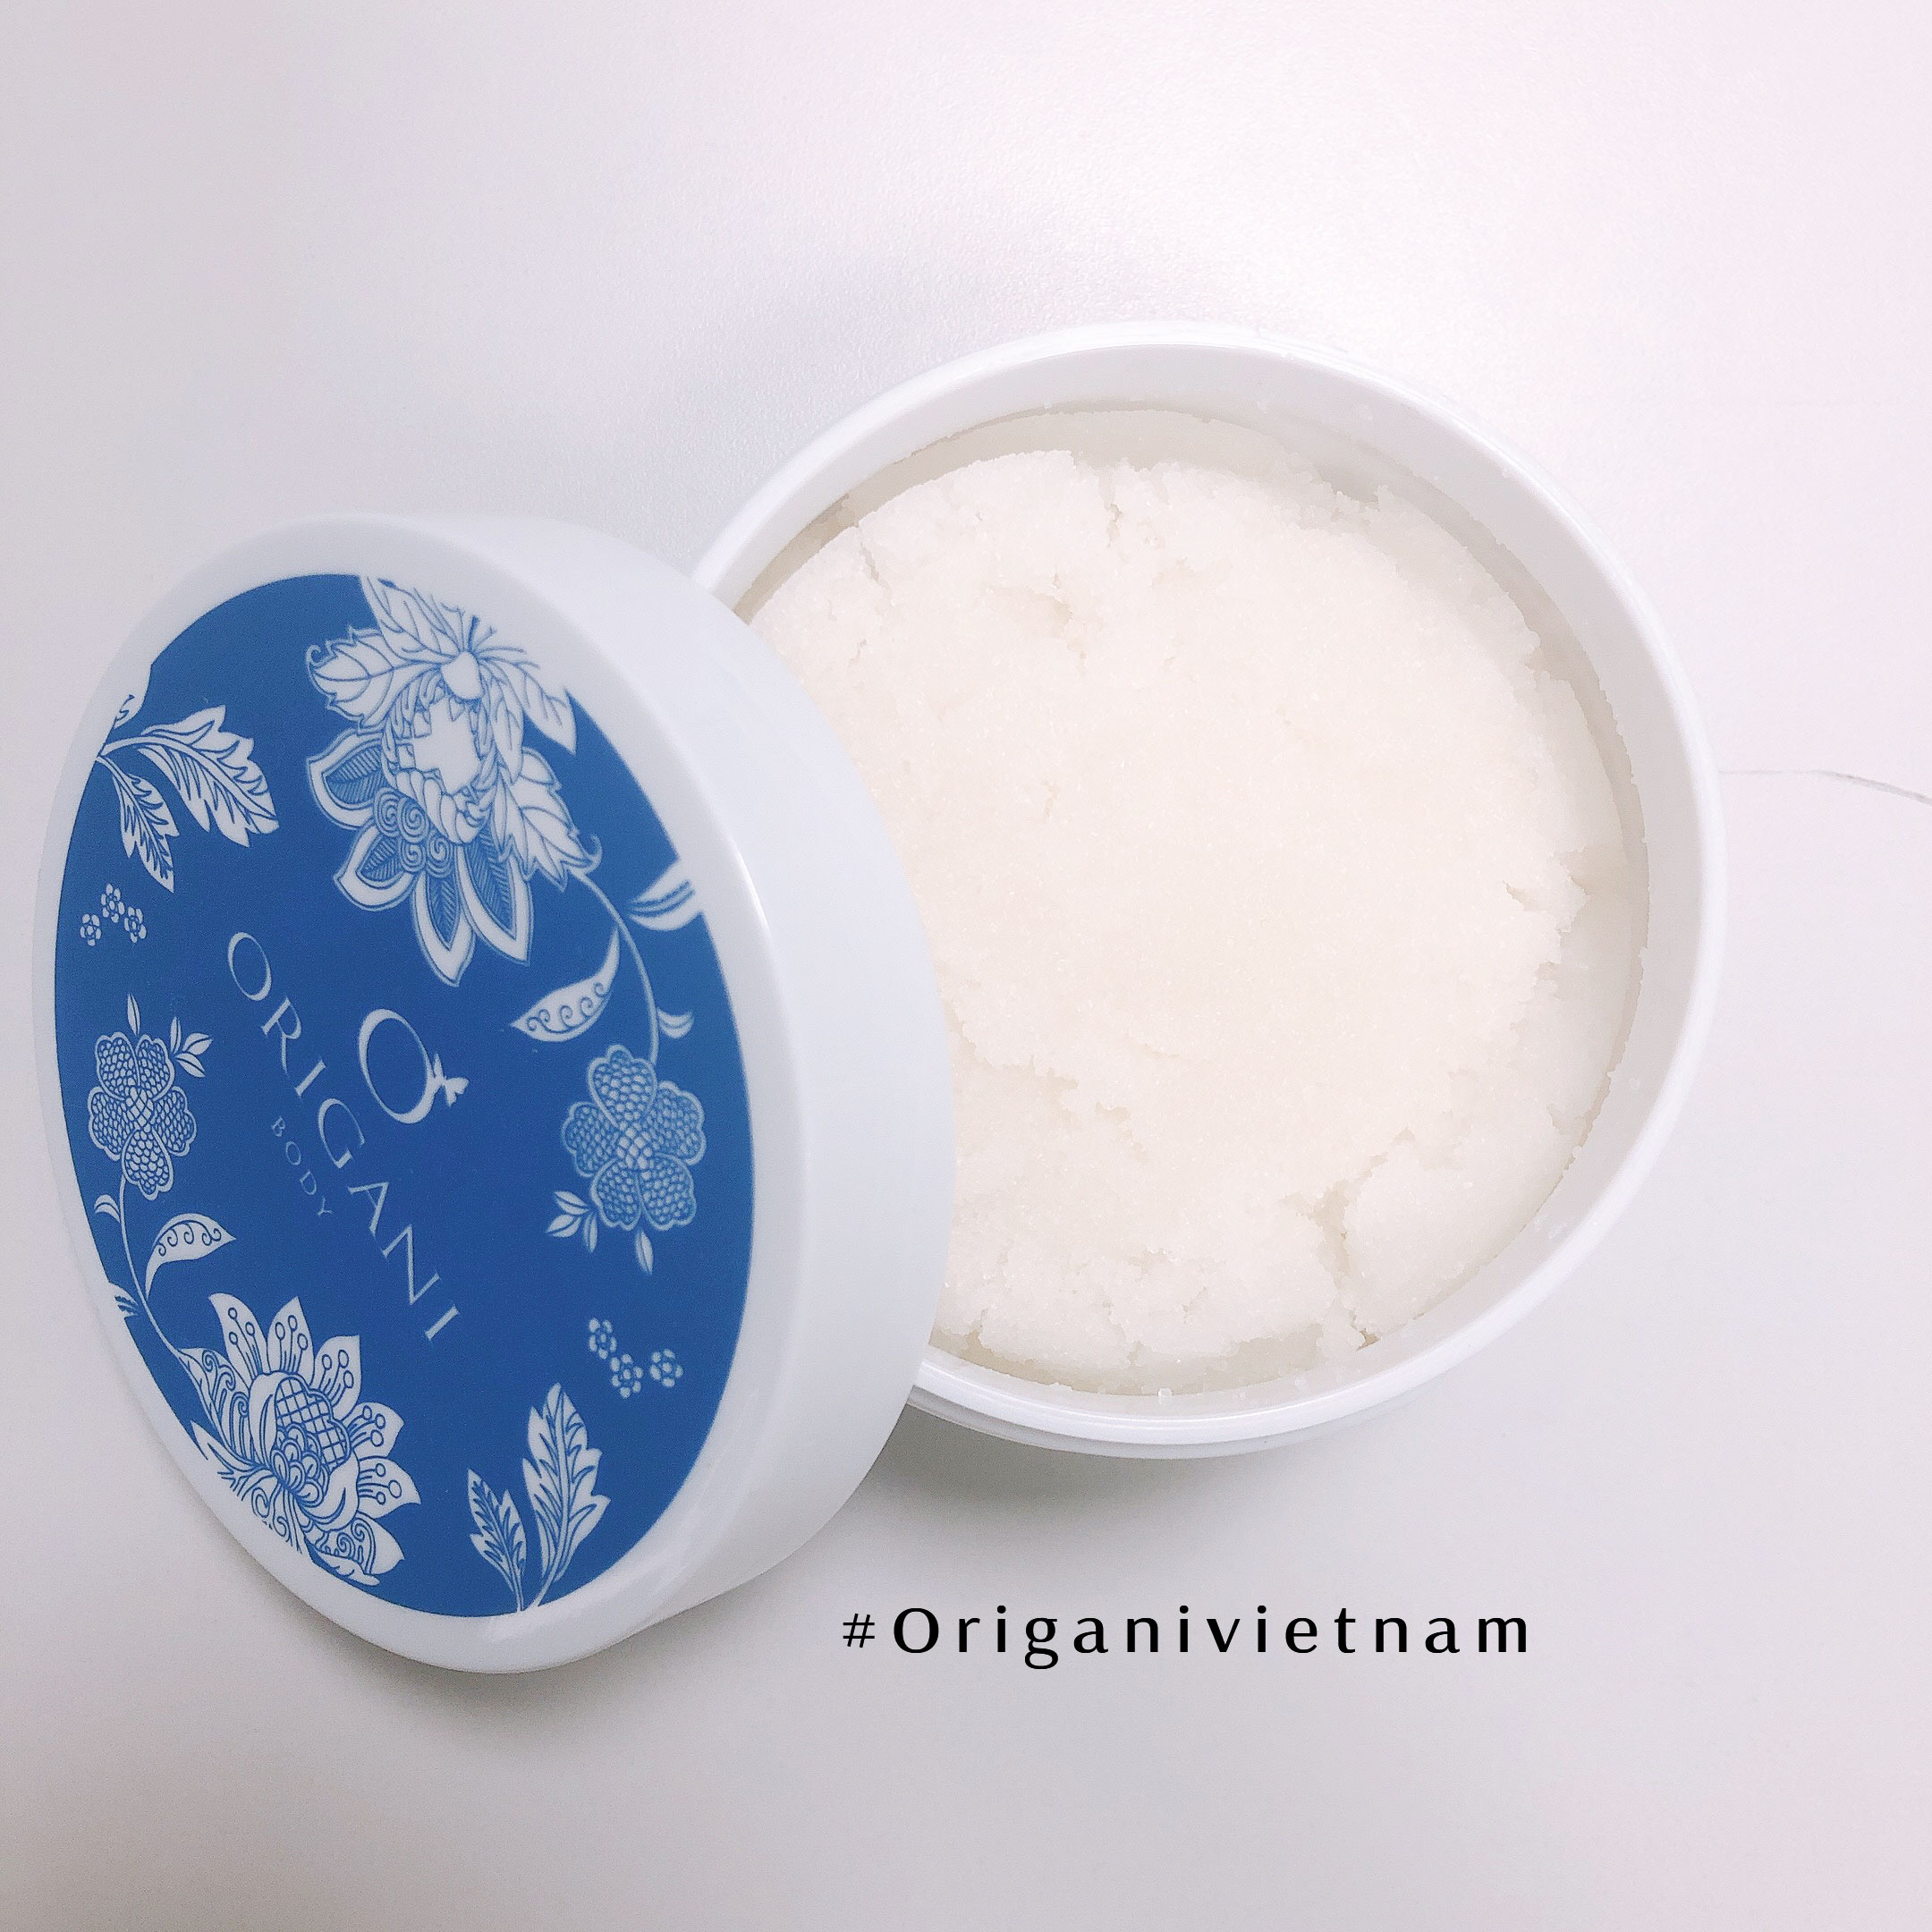 Tẩy Tế Bào Chết Body Origani - Bodycare Exfoliating Salt Scrub - Làm Sạch Da Và Cung Cấp Độ Ẩm Cho Da (Hương Vải Mùa Hè)